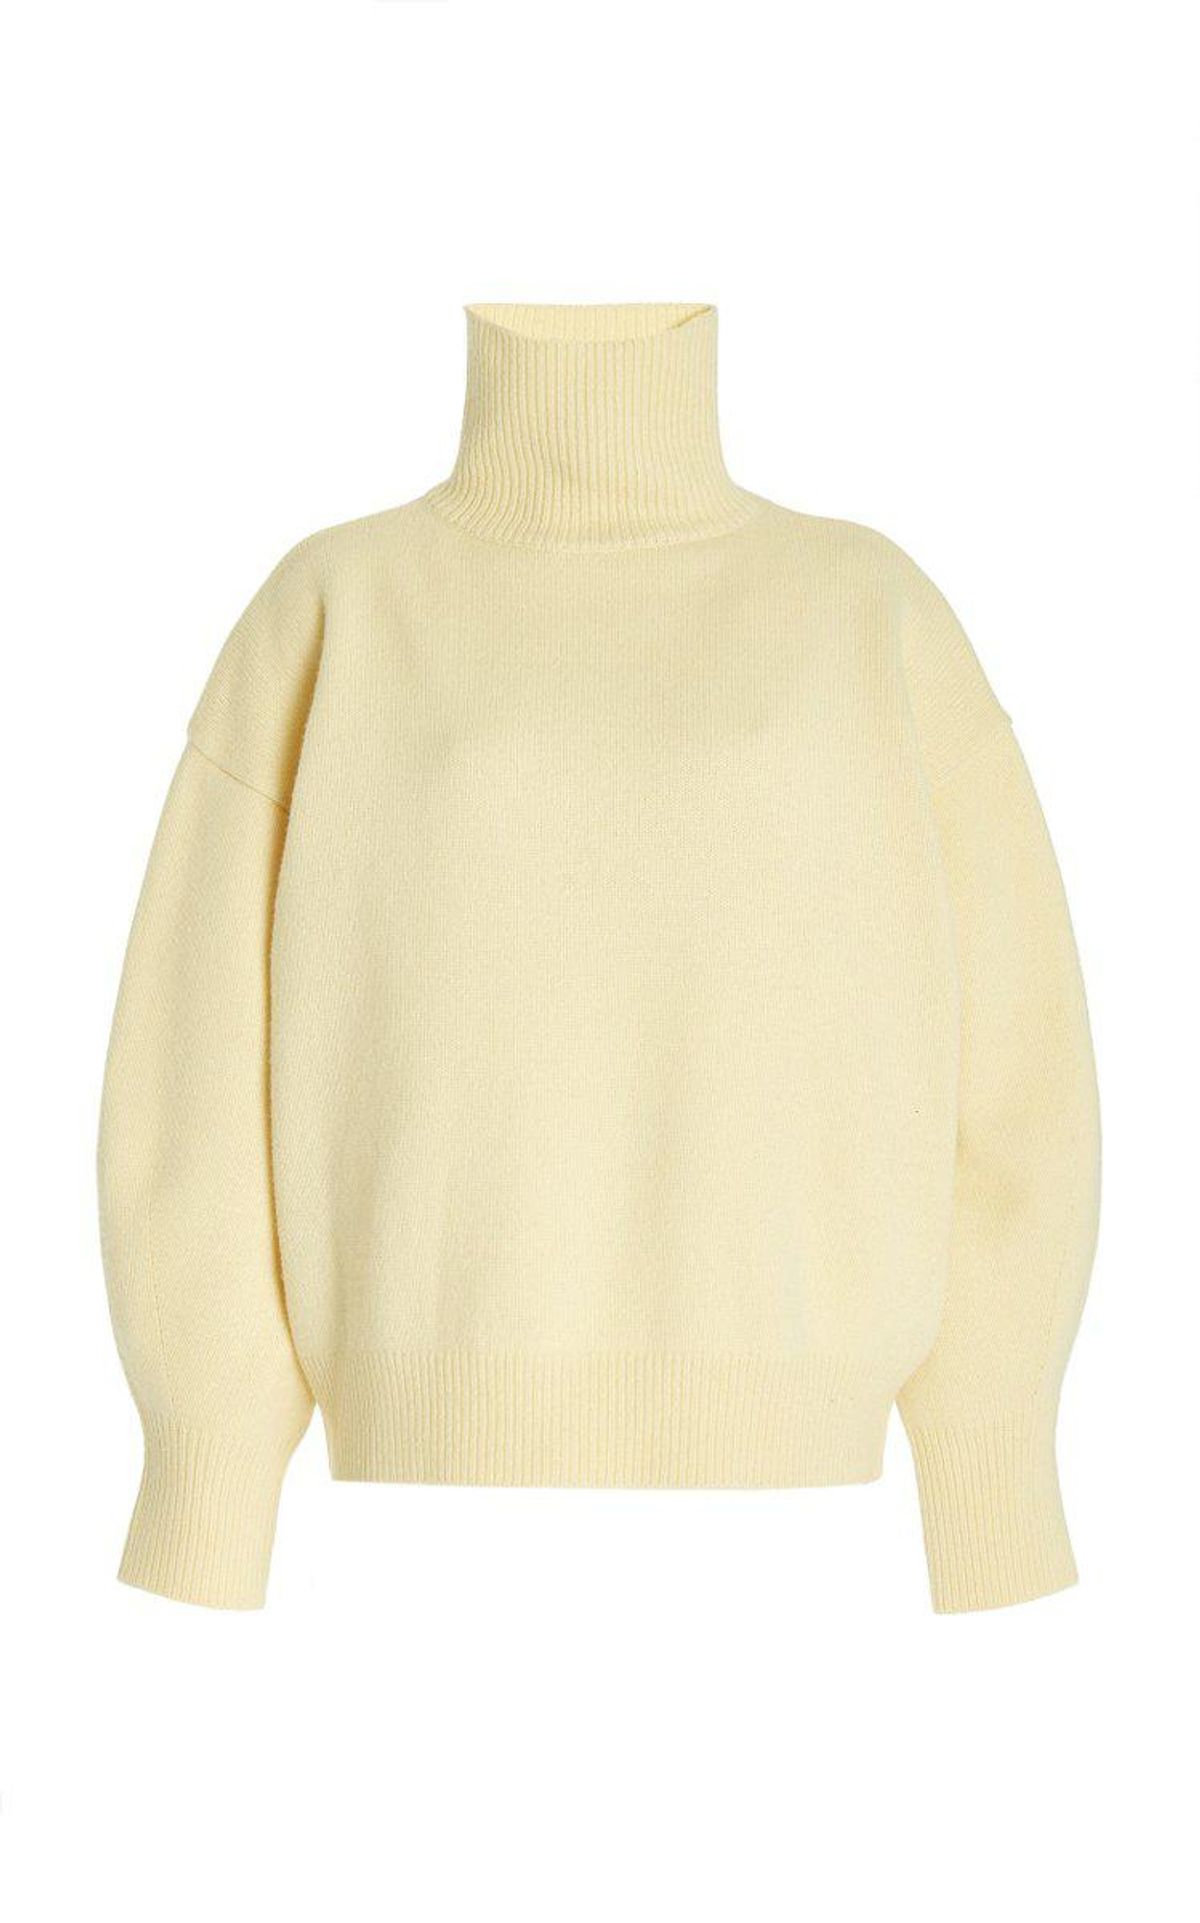 Joya Roll-neck Sweater